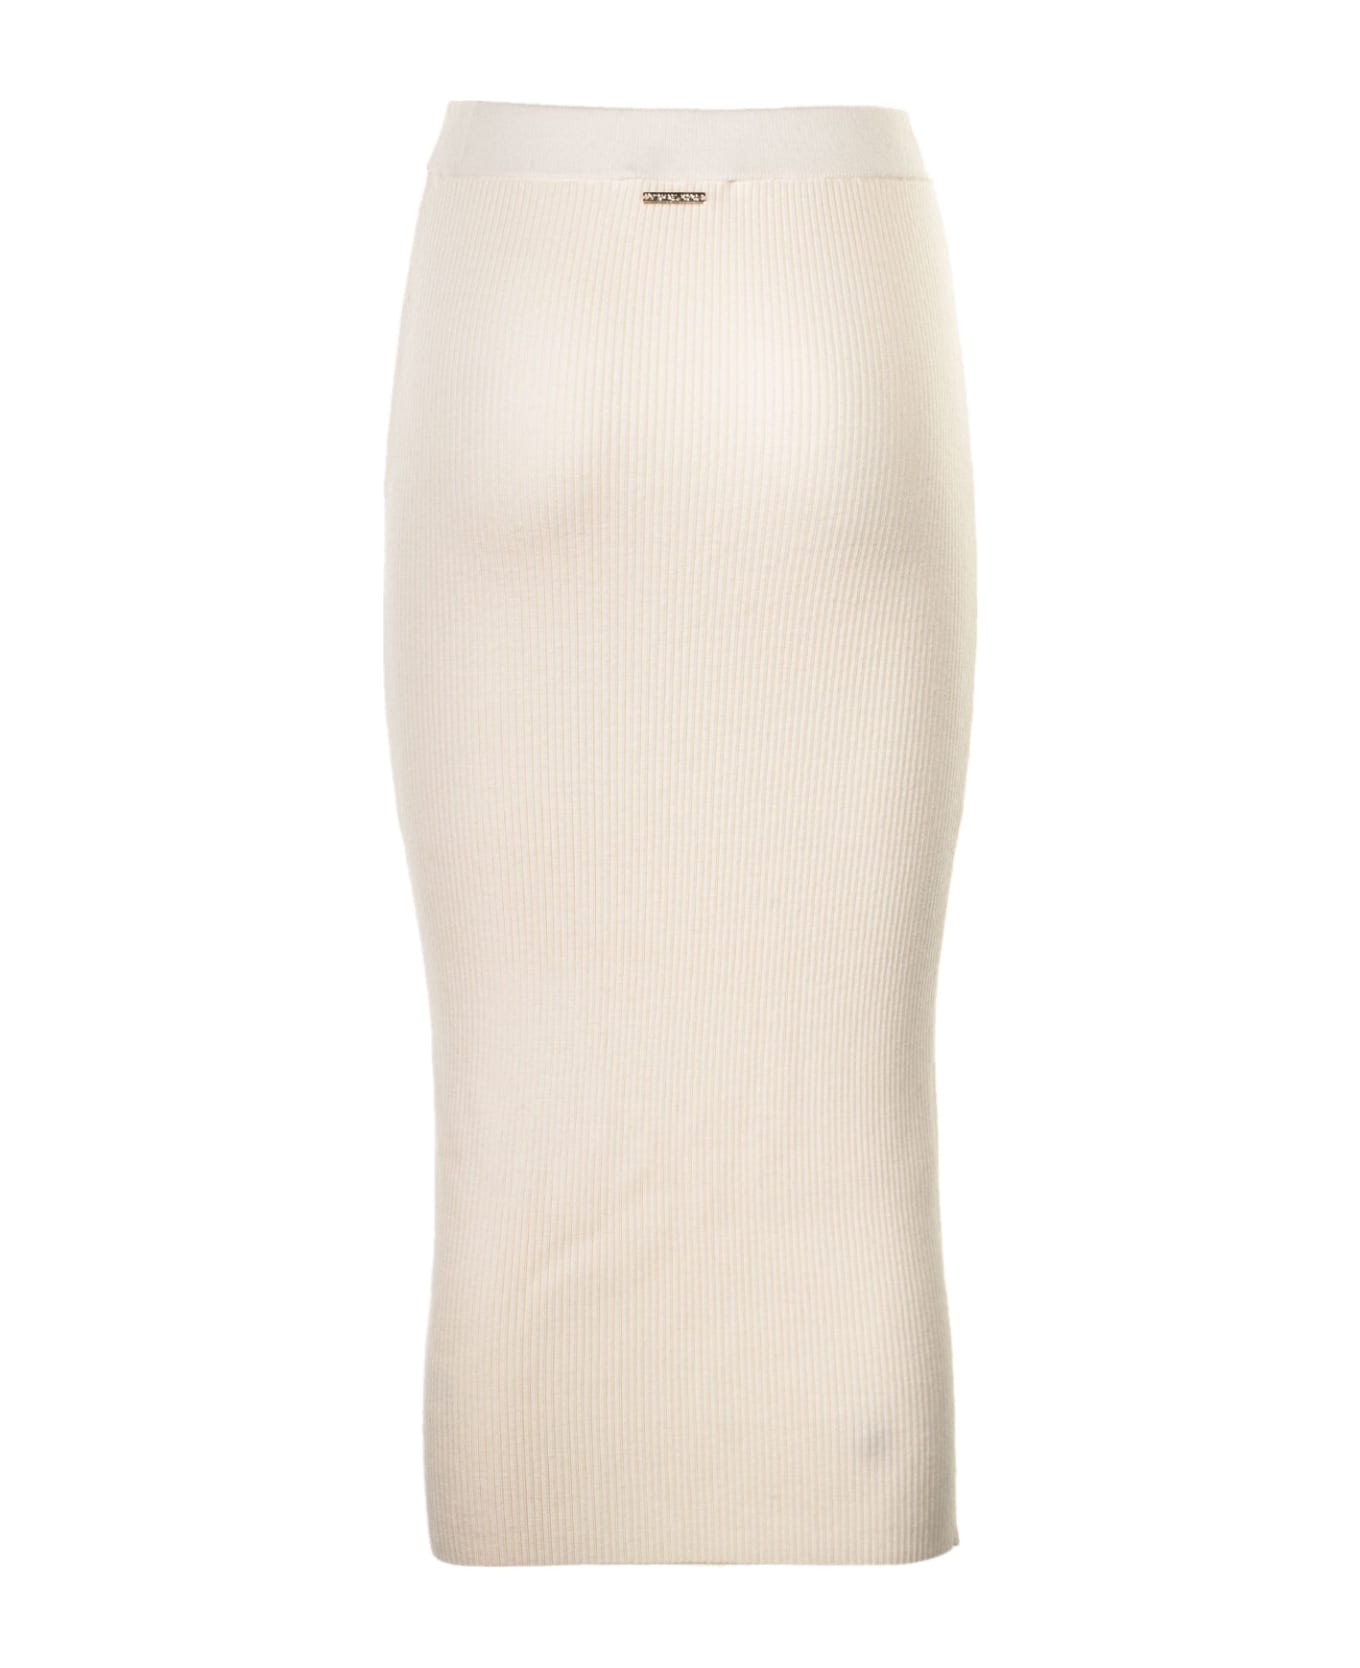 Michael Kors High Waisted Knitted Skirt - BONE